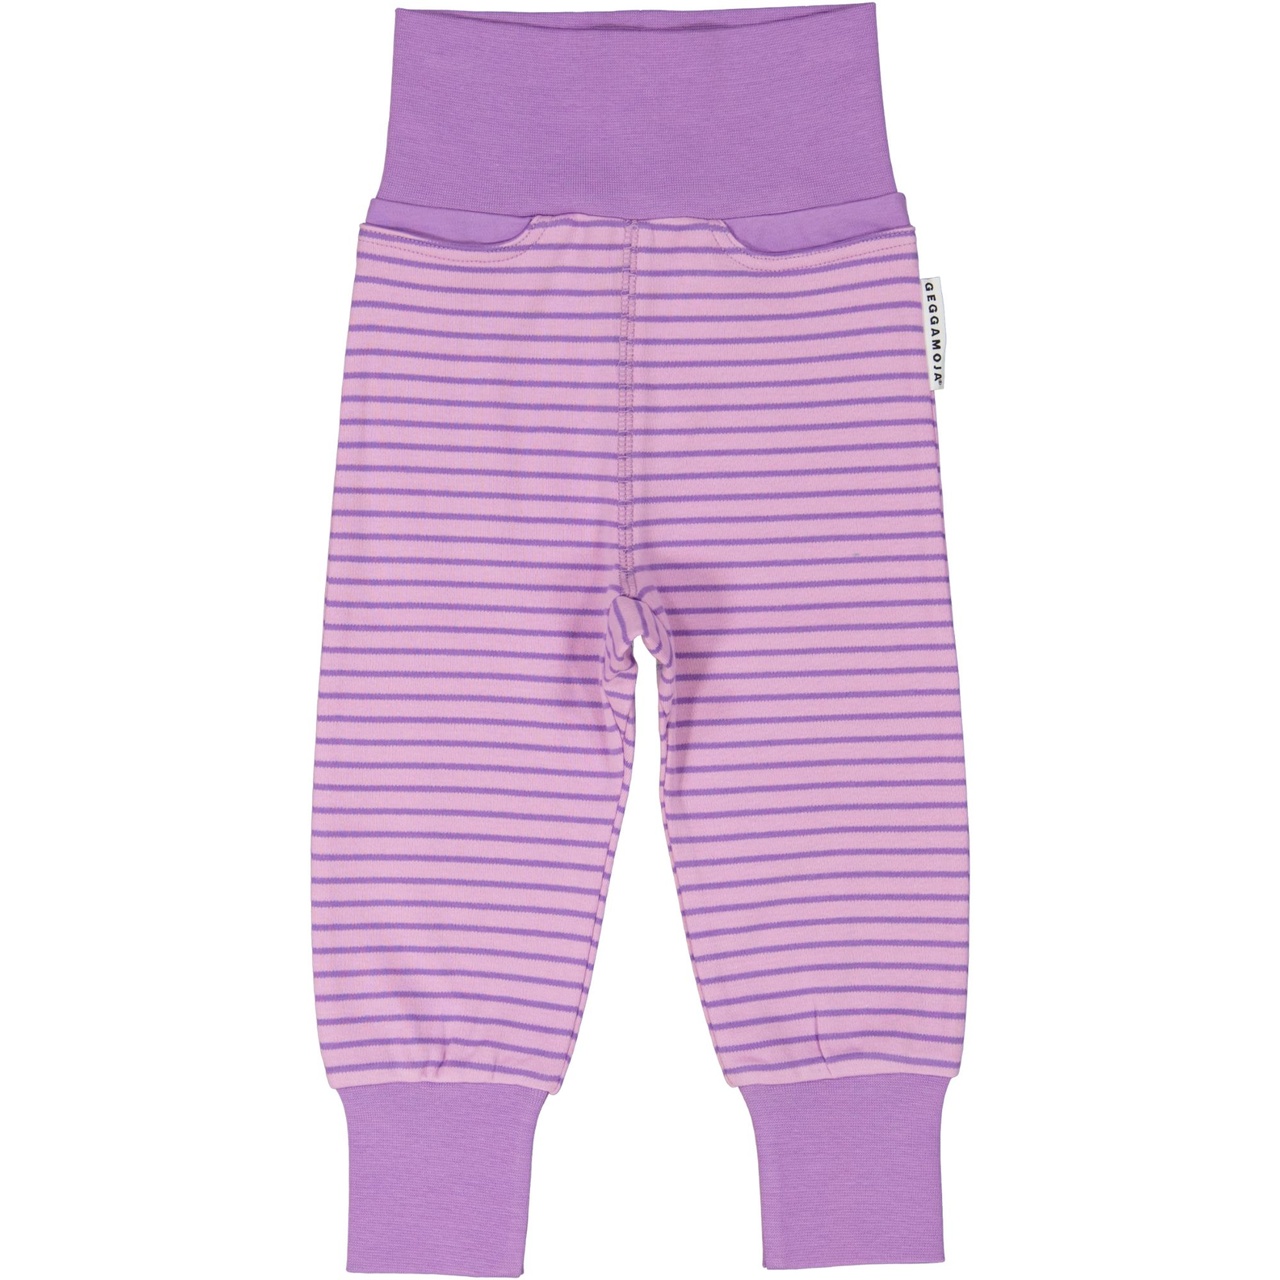 Baby trousers L.purple/purple  74/80